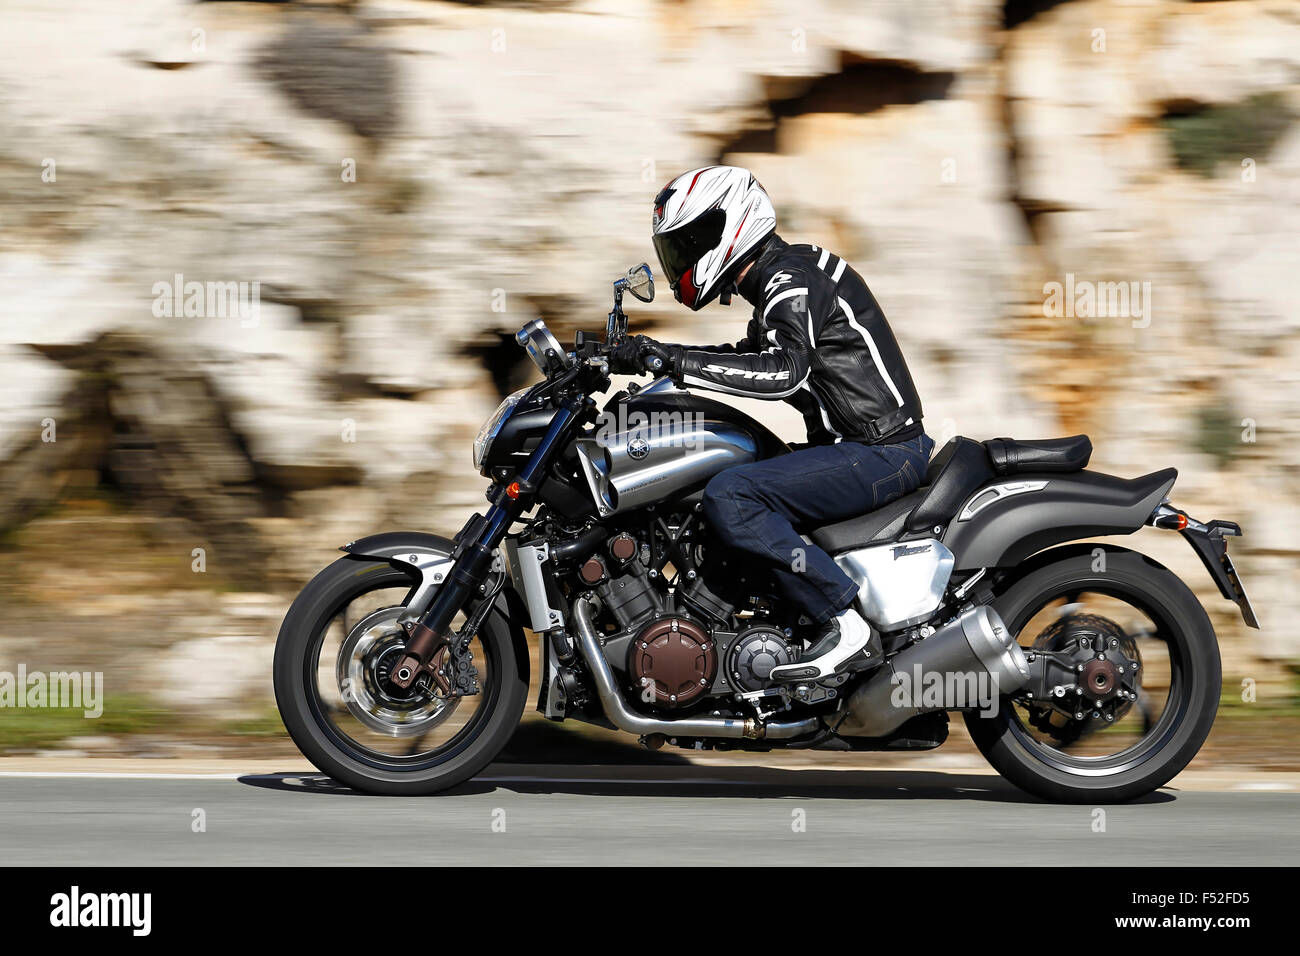 Motociclo, Speedbike, Yamaha Vmax, panoramiche, lato sinistro, Anno di costruzione nel 2012, Foto Stock